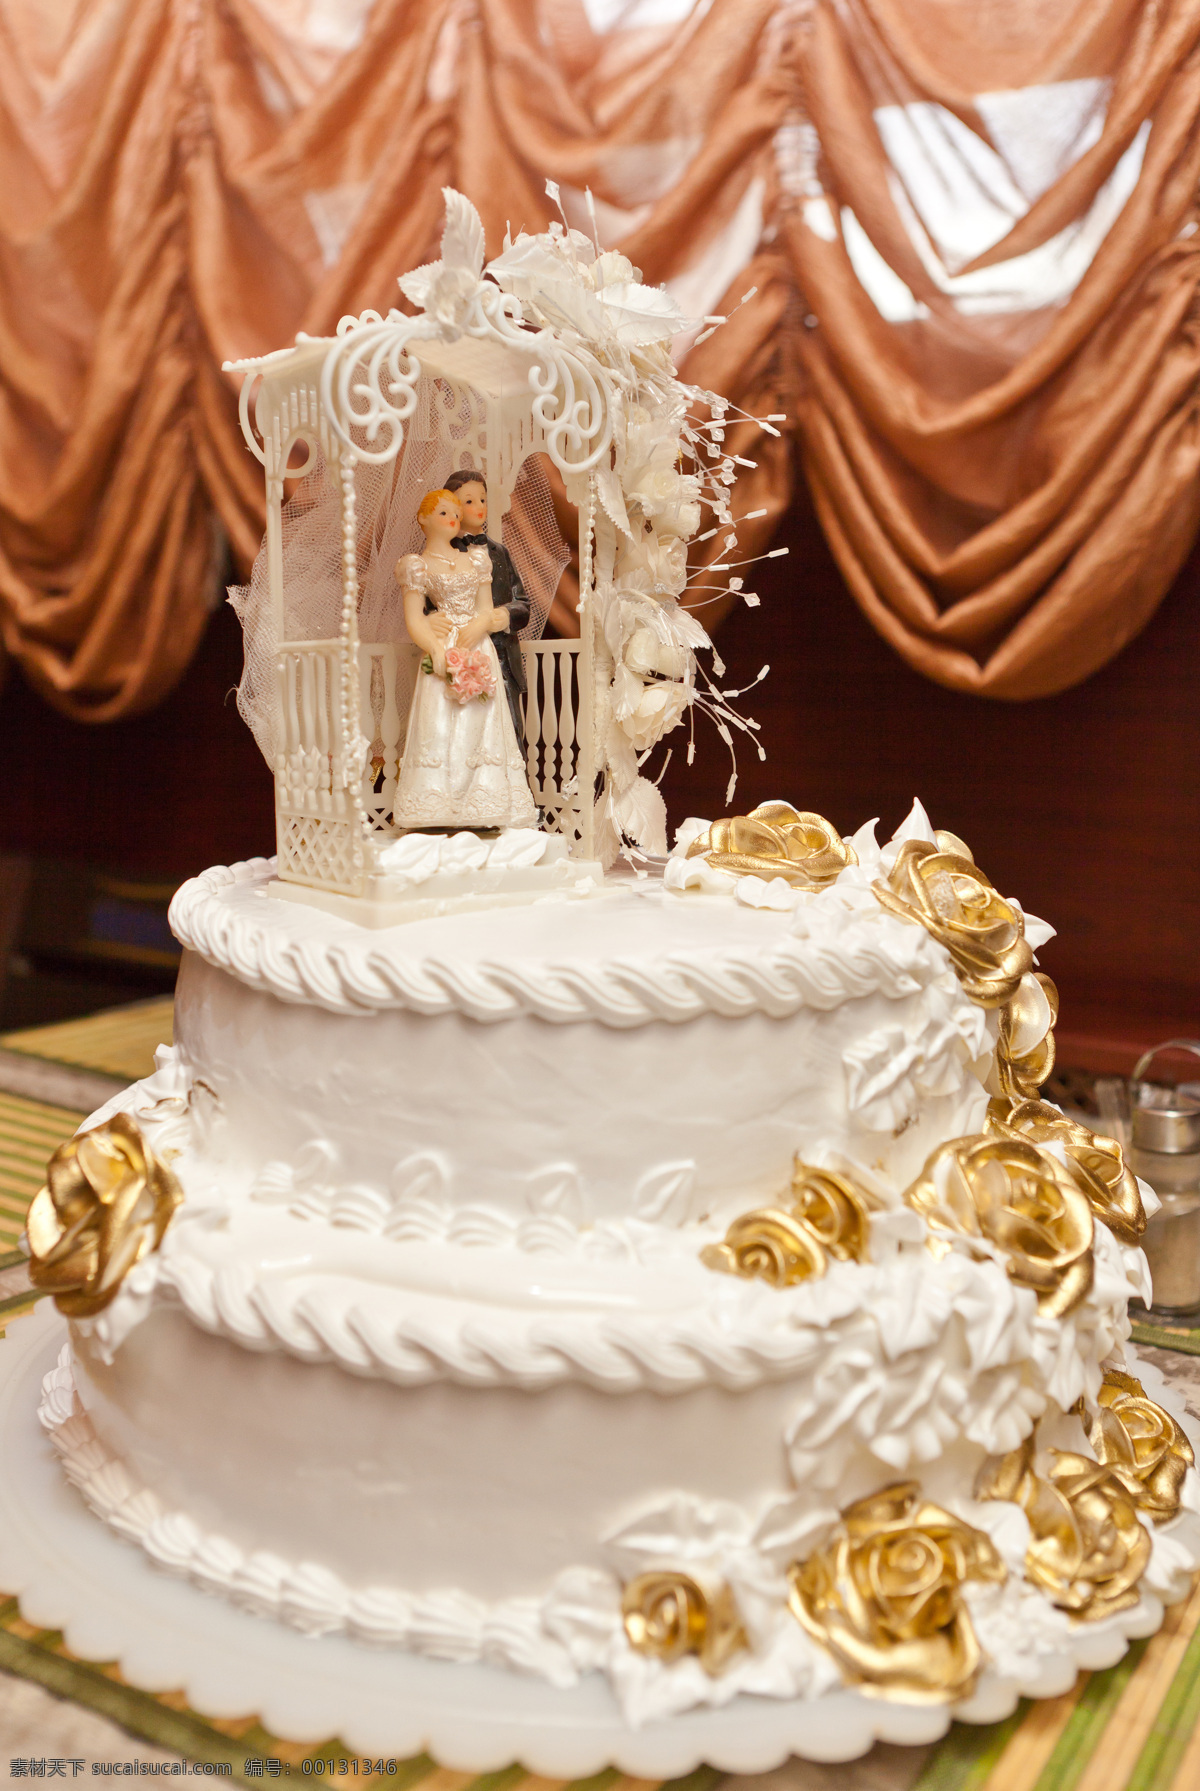 精美 结婚 蛋糕 精美的蛋糕 结婚蛋糕 金色玫瑰装饰 婚礼用品 生日蛋糕图片 餐饮美食